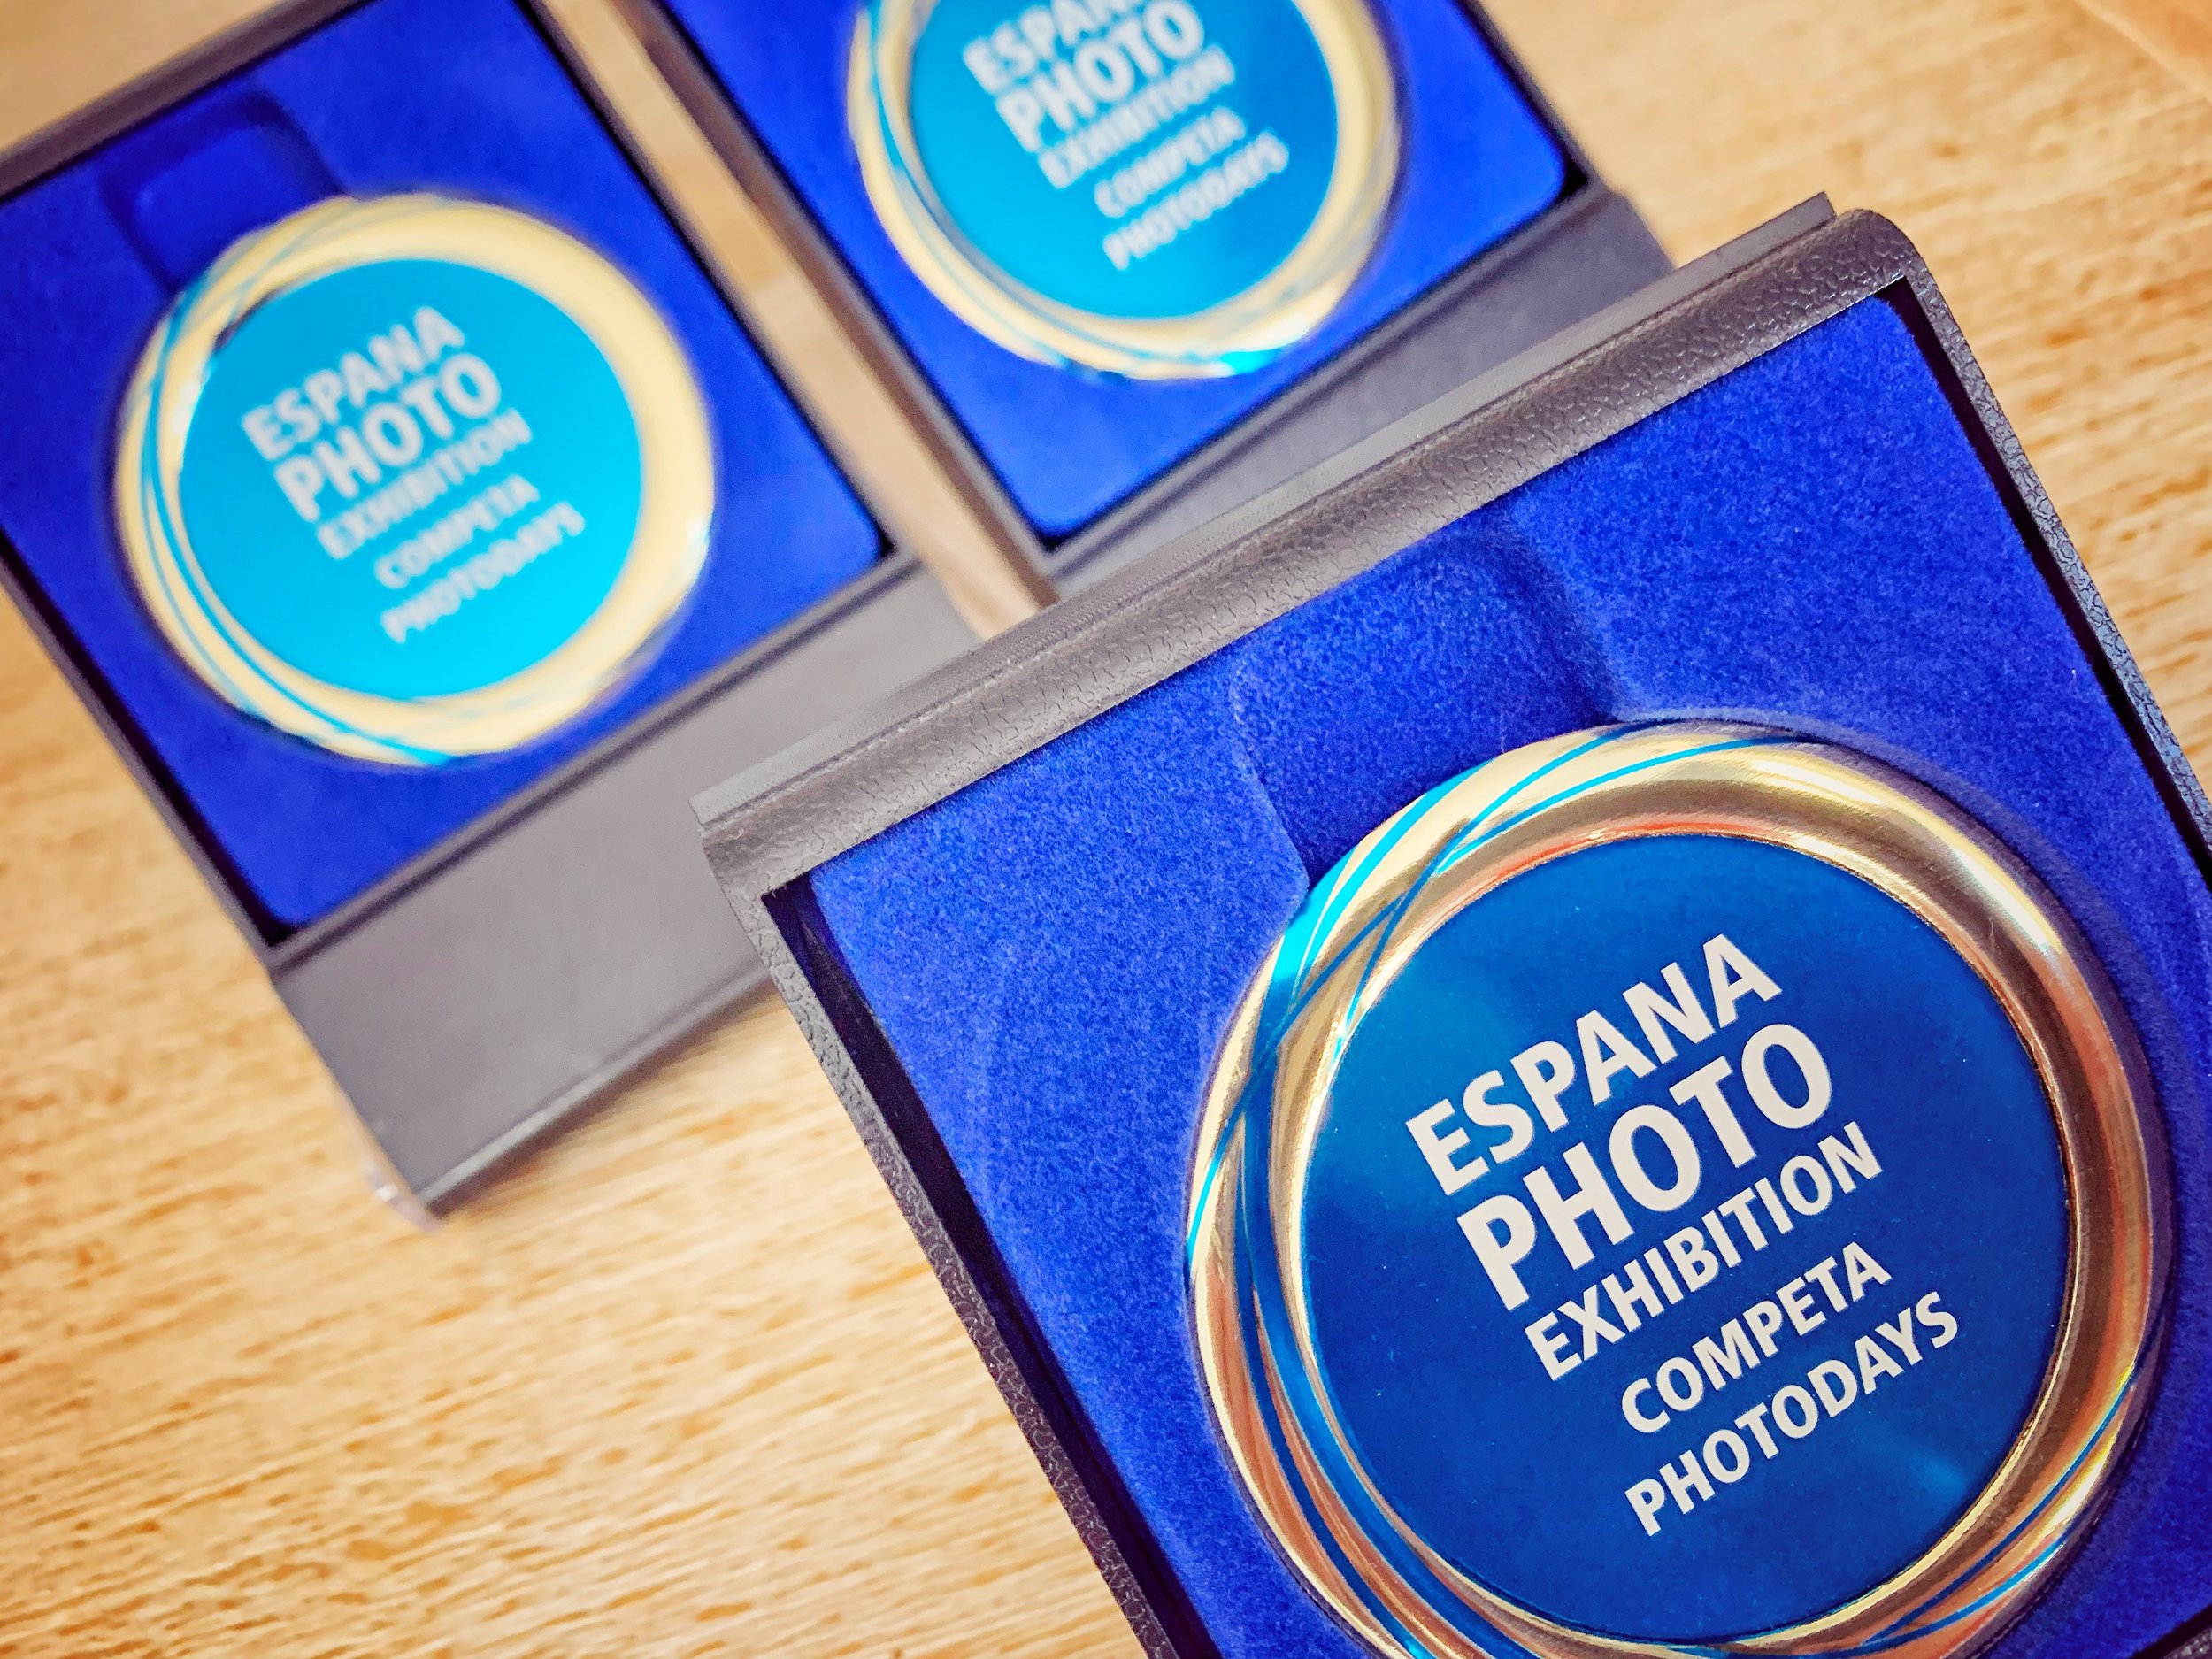 El Premio Epex de fotografía se amplía hasta el 20 de octubre debido a la gran demanda